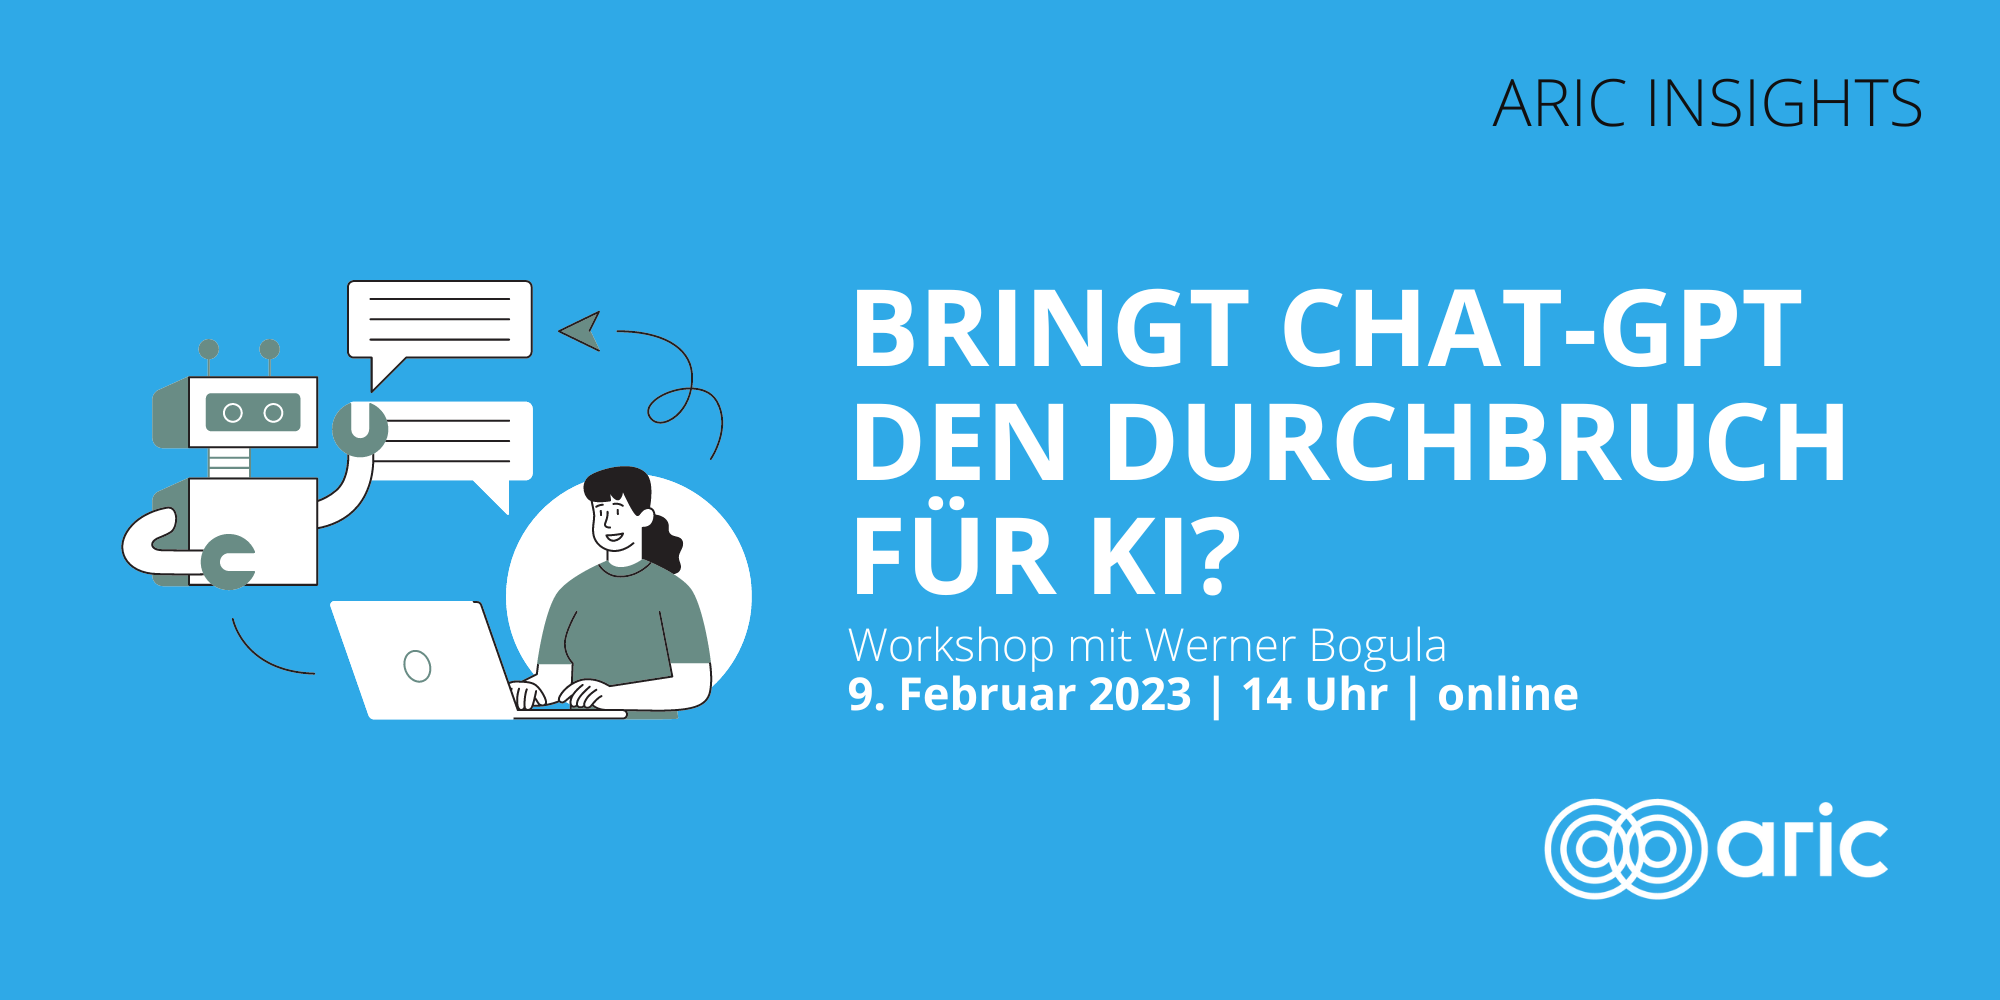 Bringt ChatGPG den Durchbruch für KI? ARIC Insights Onlineworkshop mit Werner Bogula am 9. Februar 2023